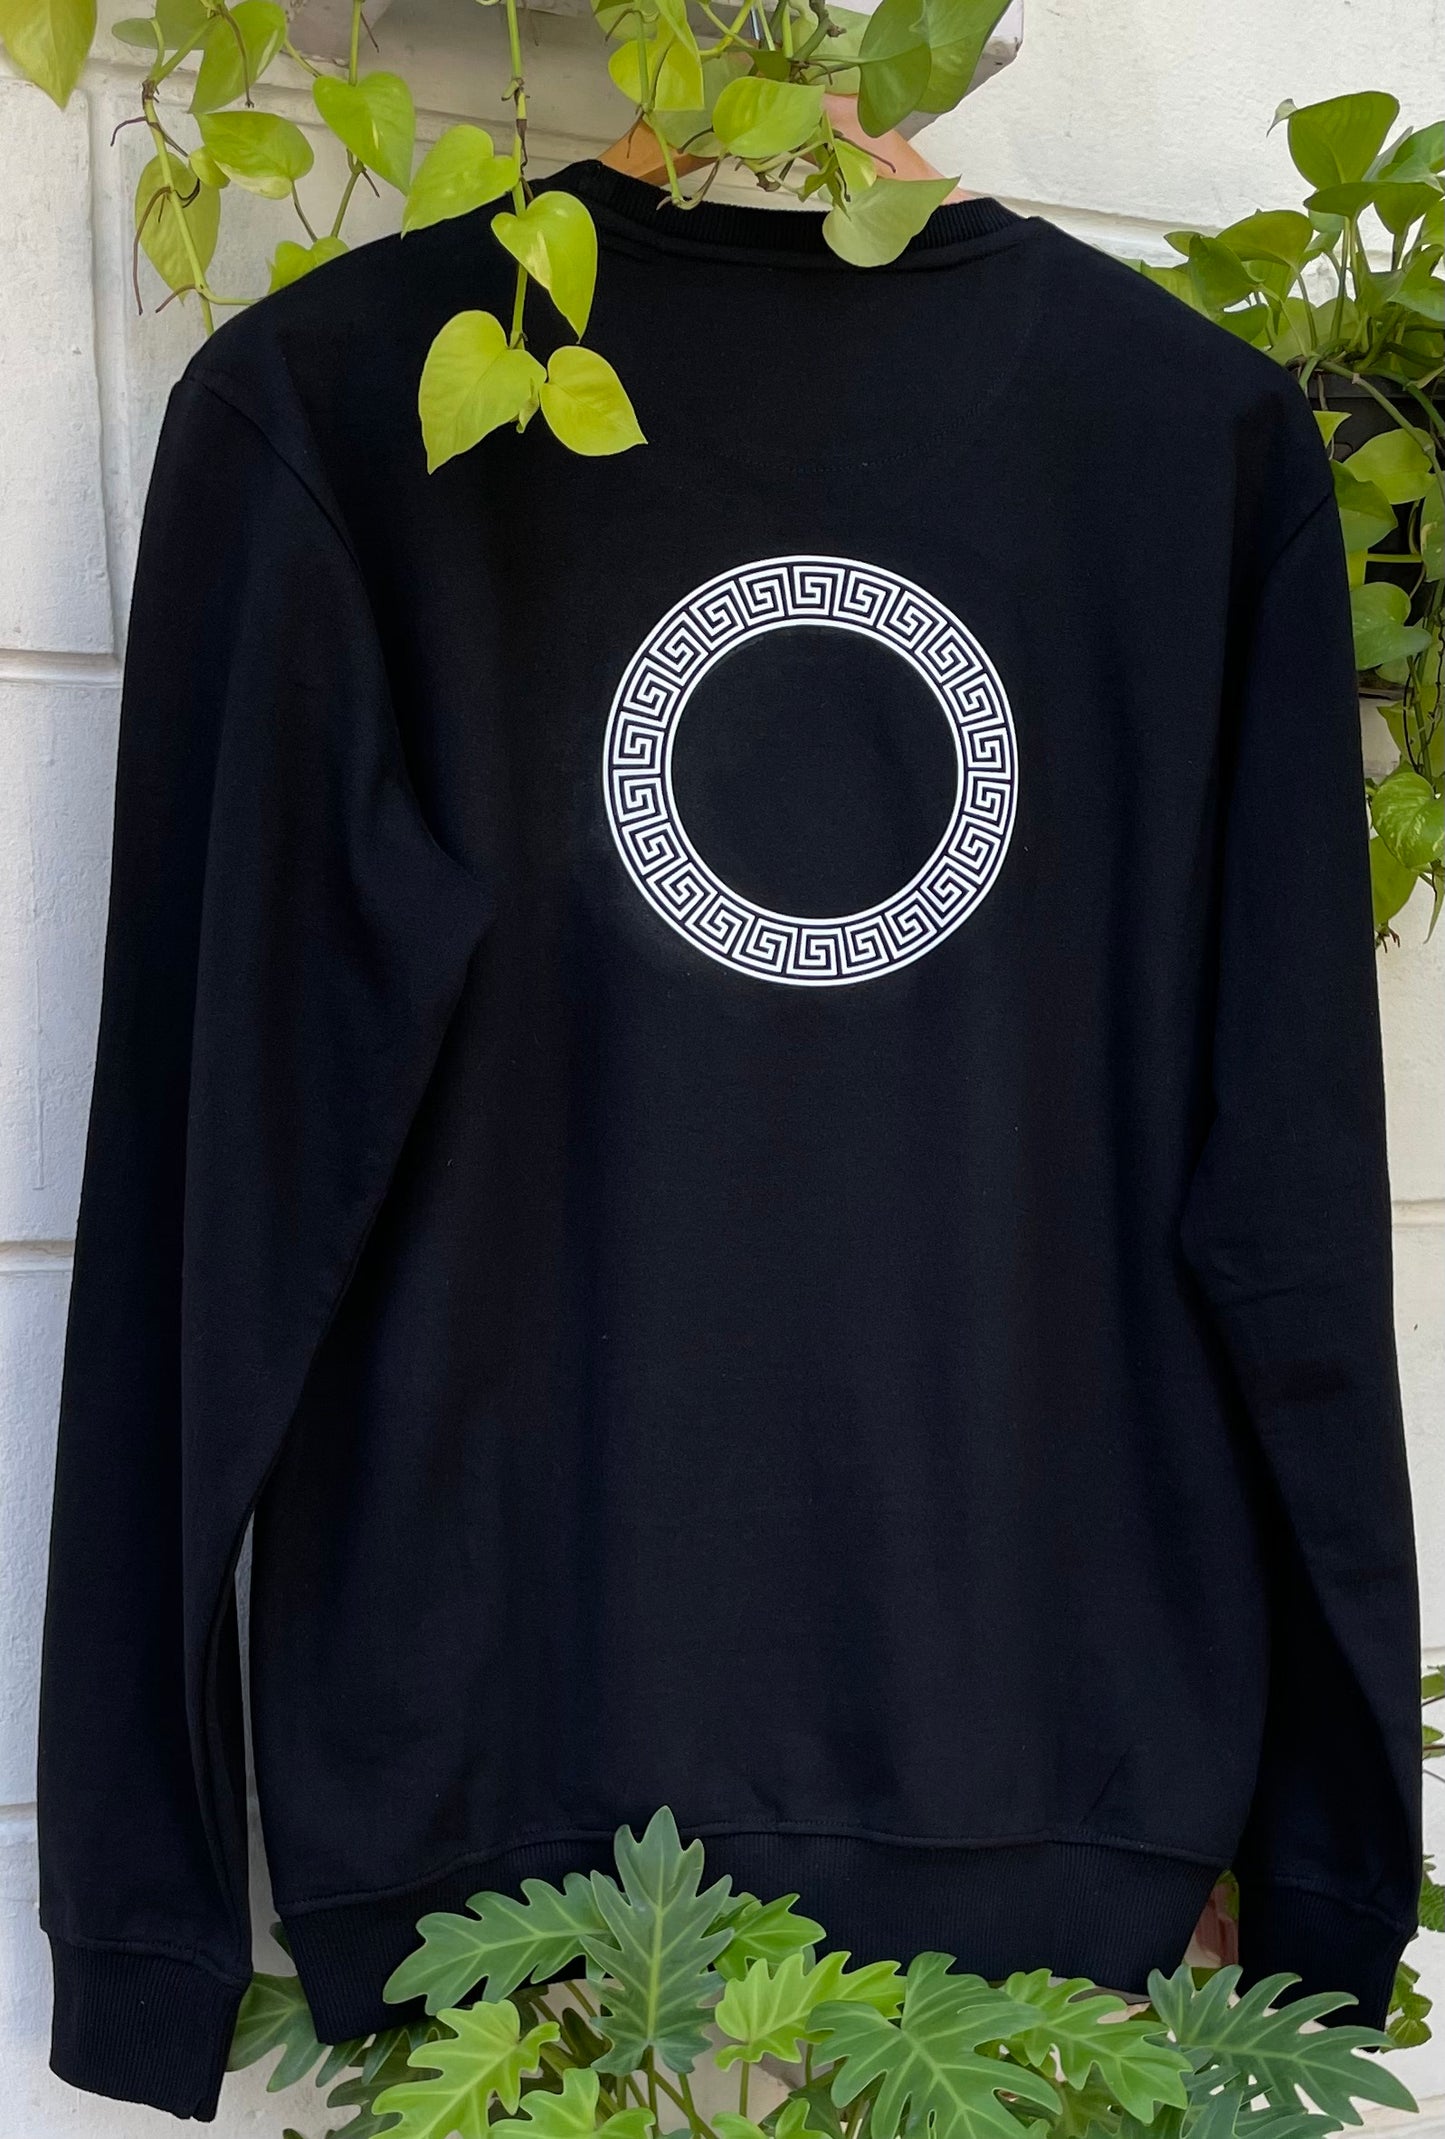 Black Sweatshirt with Meander Pattern (Unisex)